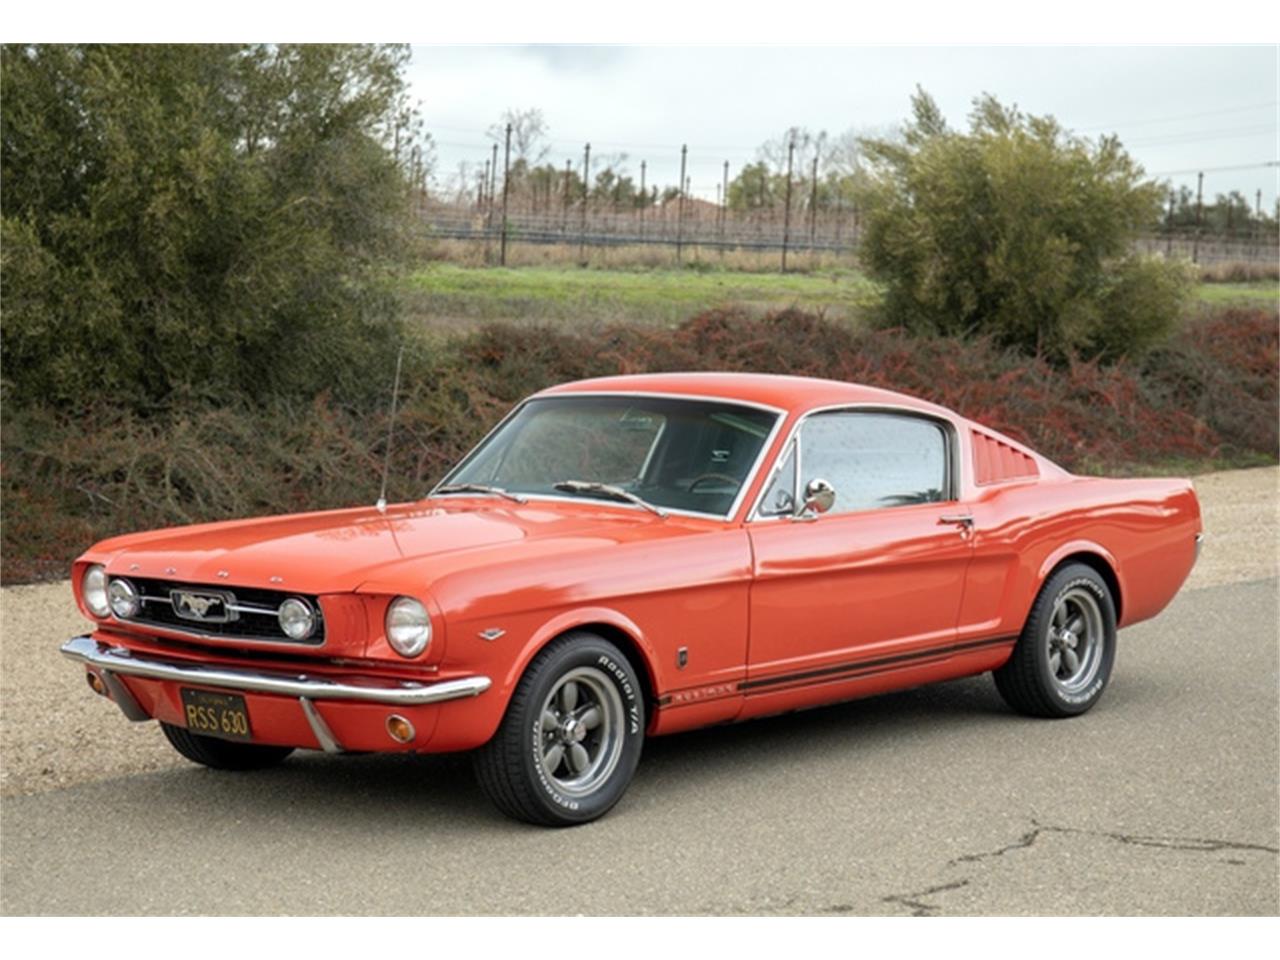 For Sale: 1966 Ford Mustang in Pleasanton, California for sale in Pleasanton, CA